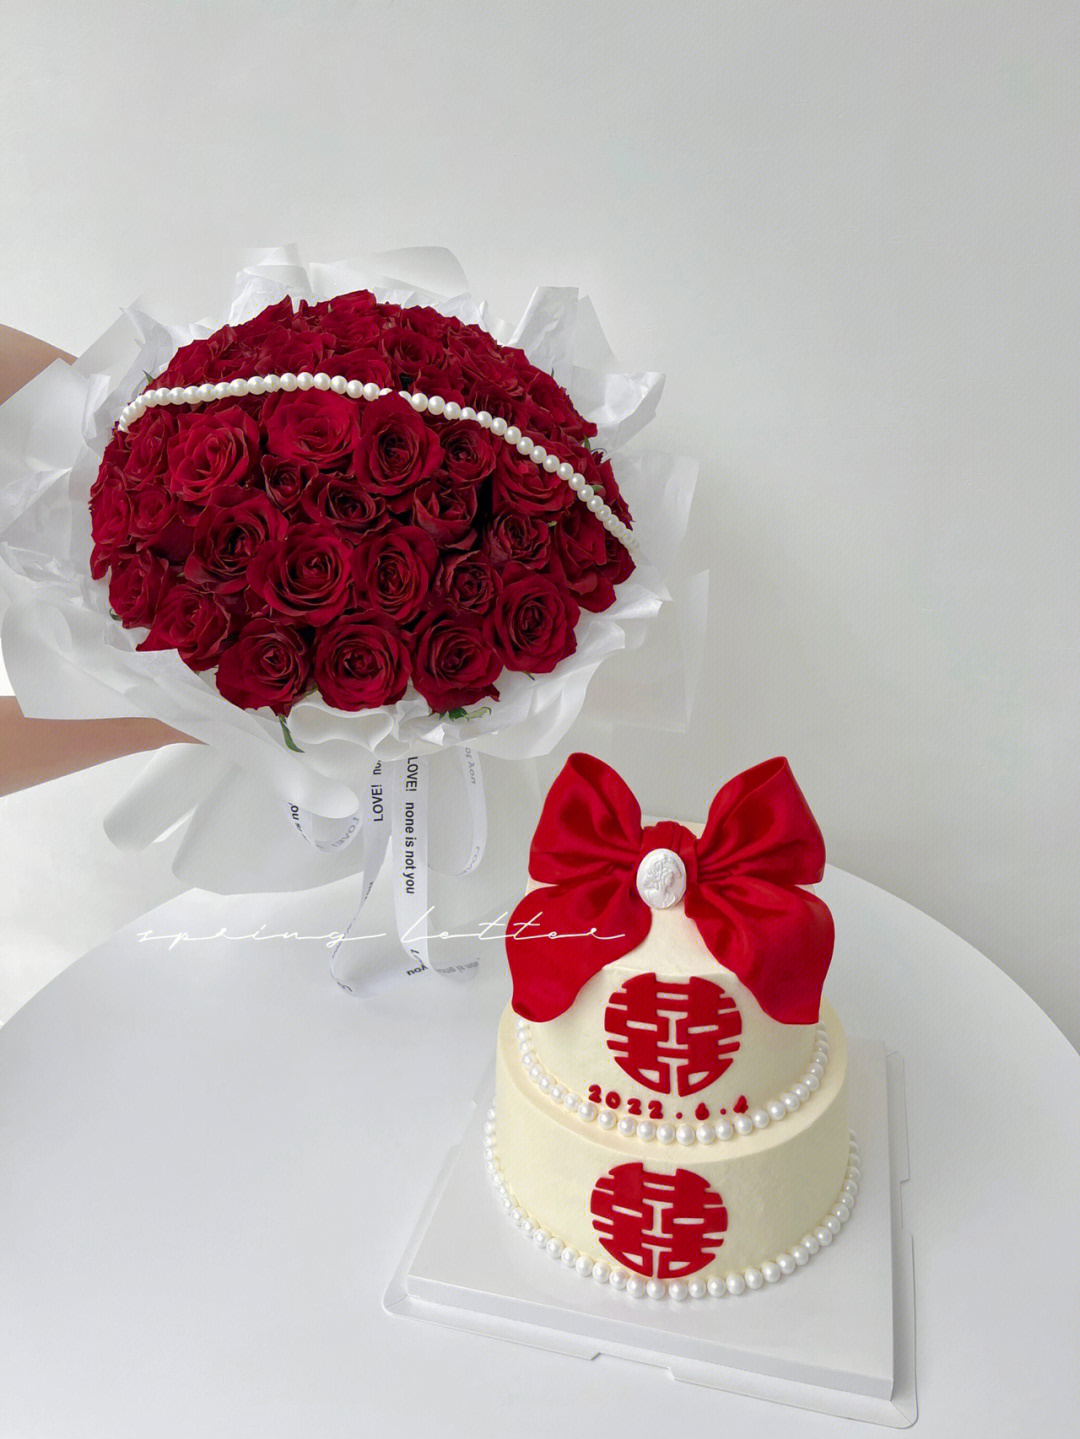 订婚蛋糕7752朵传奇玫瑰无锡蛋糕鲜花店